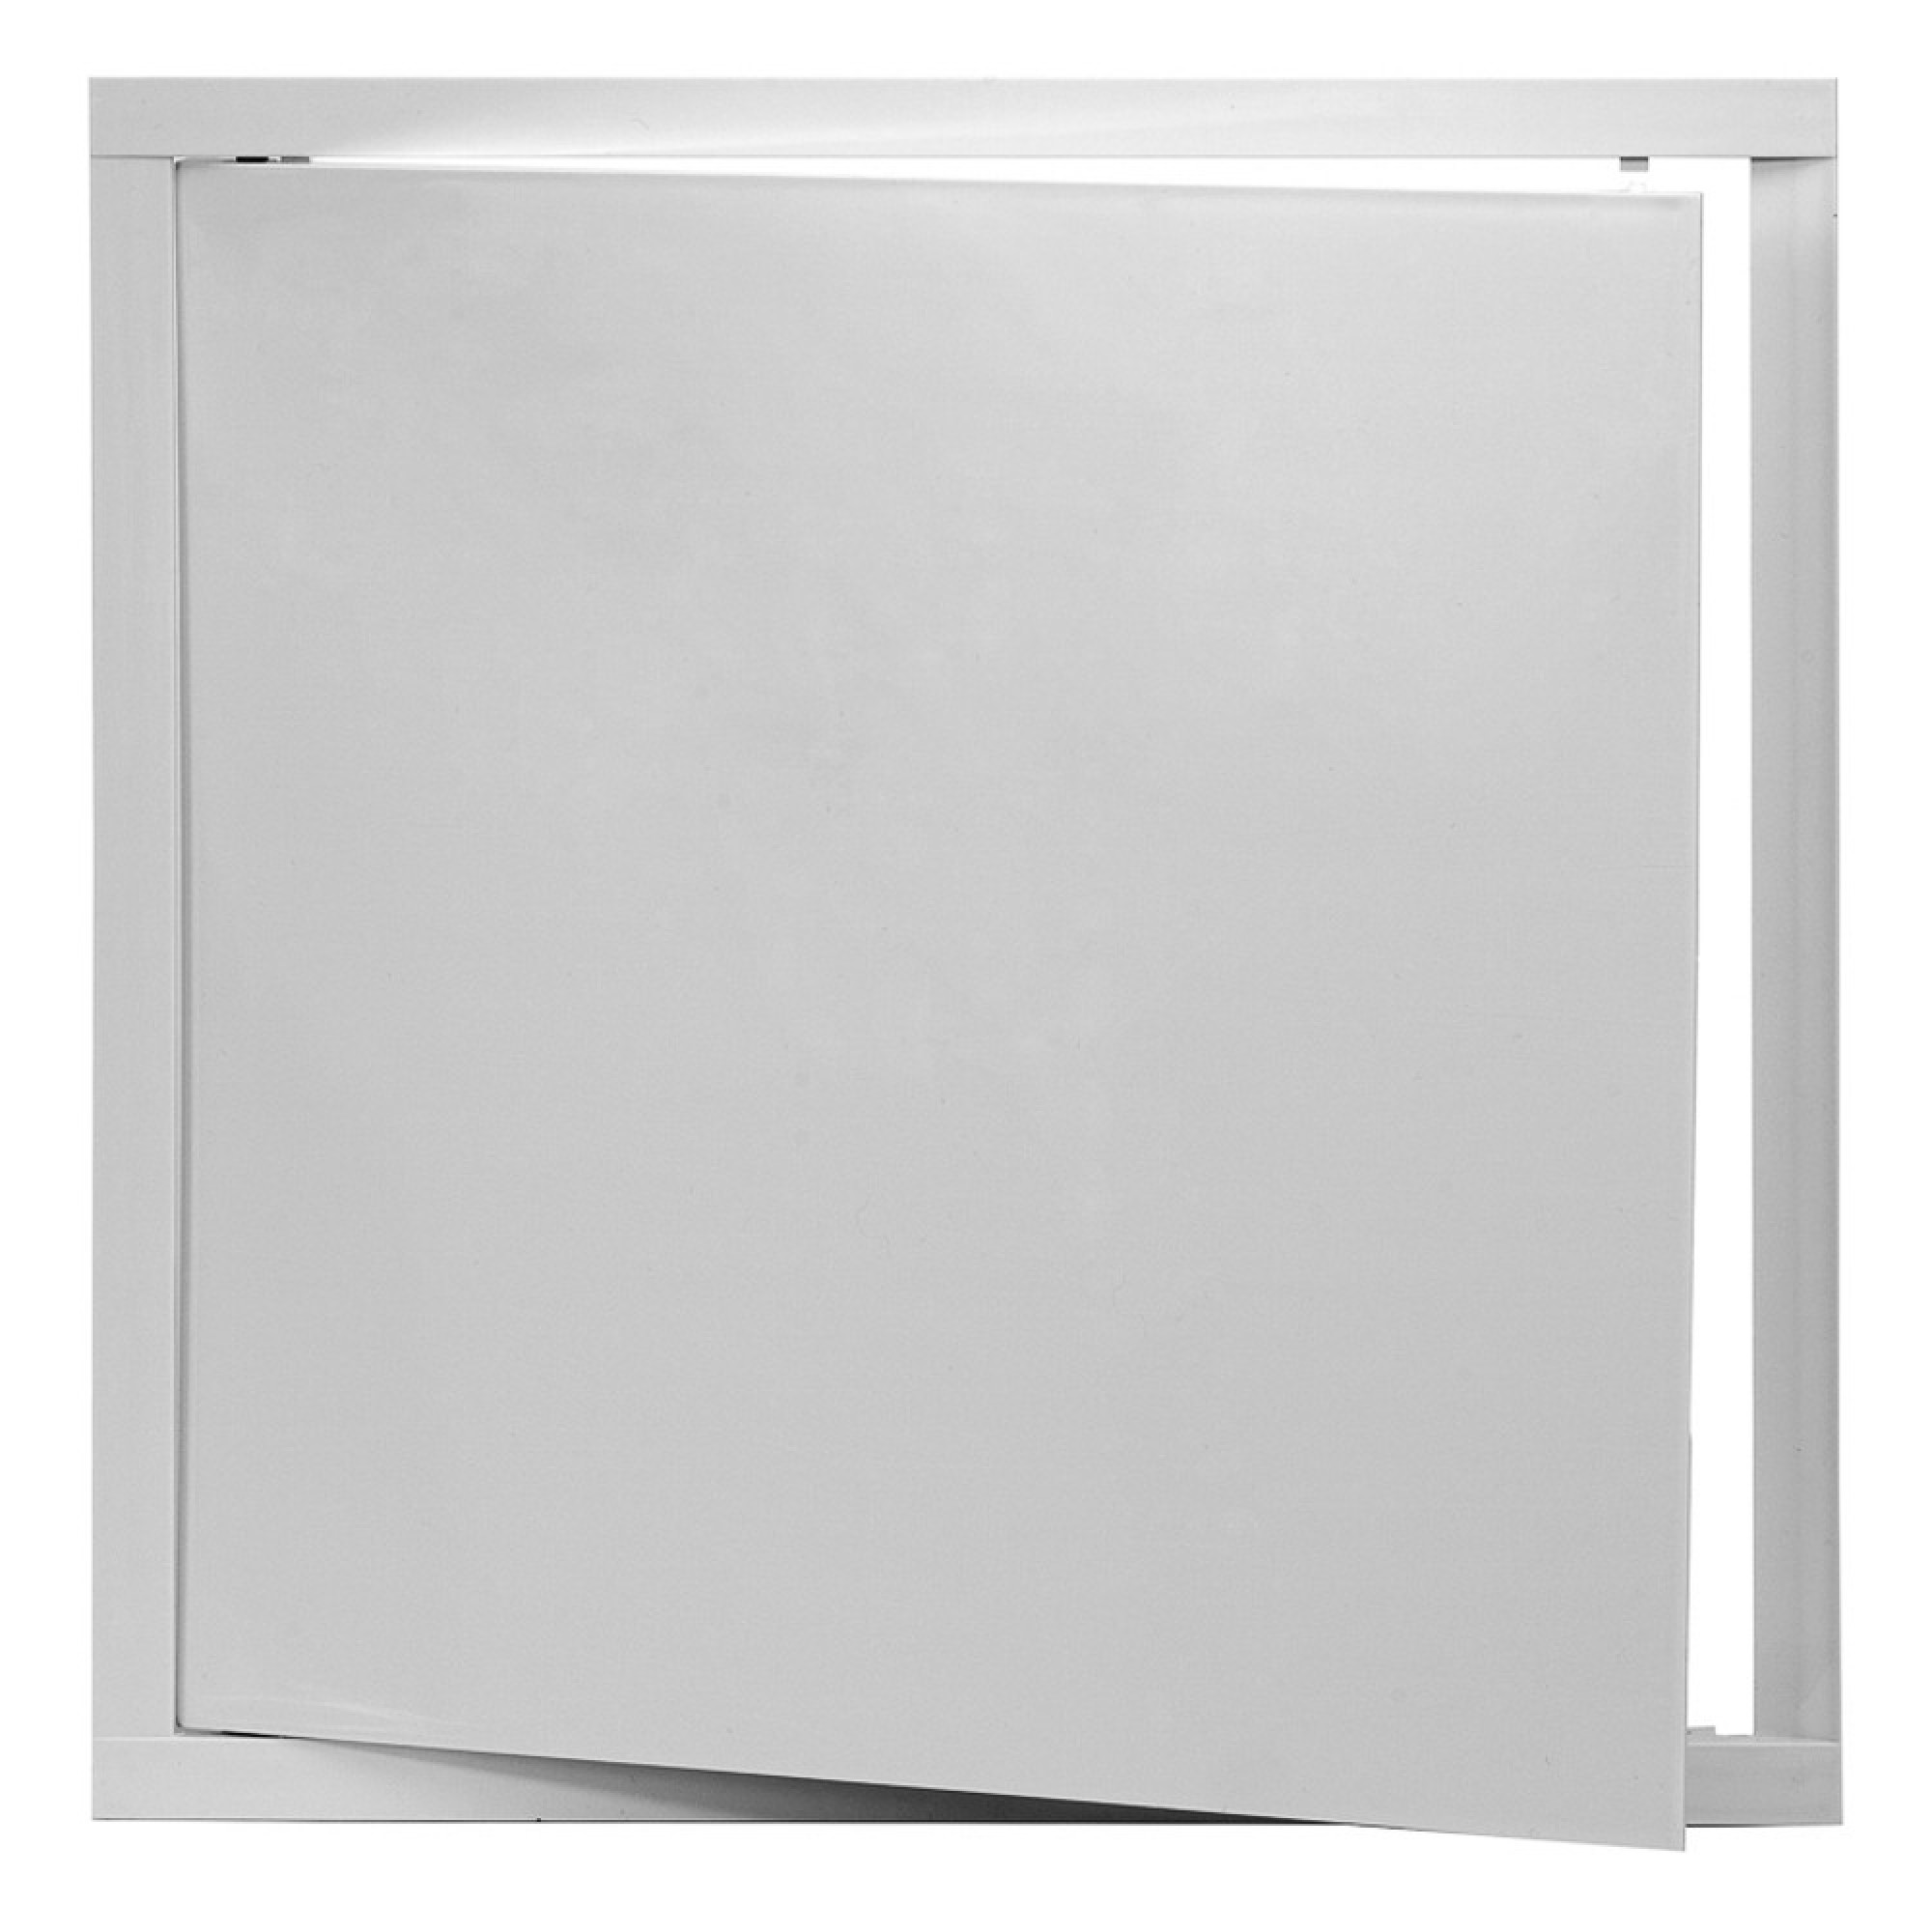 Sisteme de ventilatie - Usita de vizitare, ABS, alb, 400 x 400 mm, profiline.ro